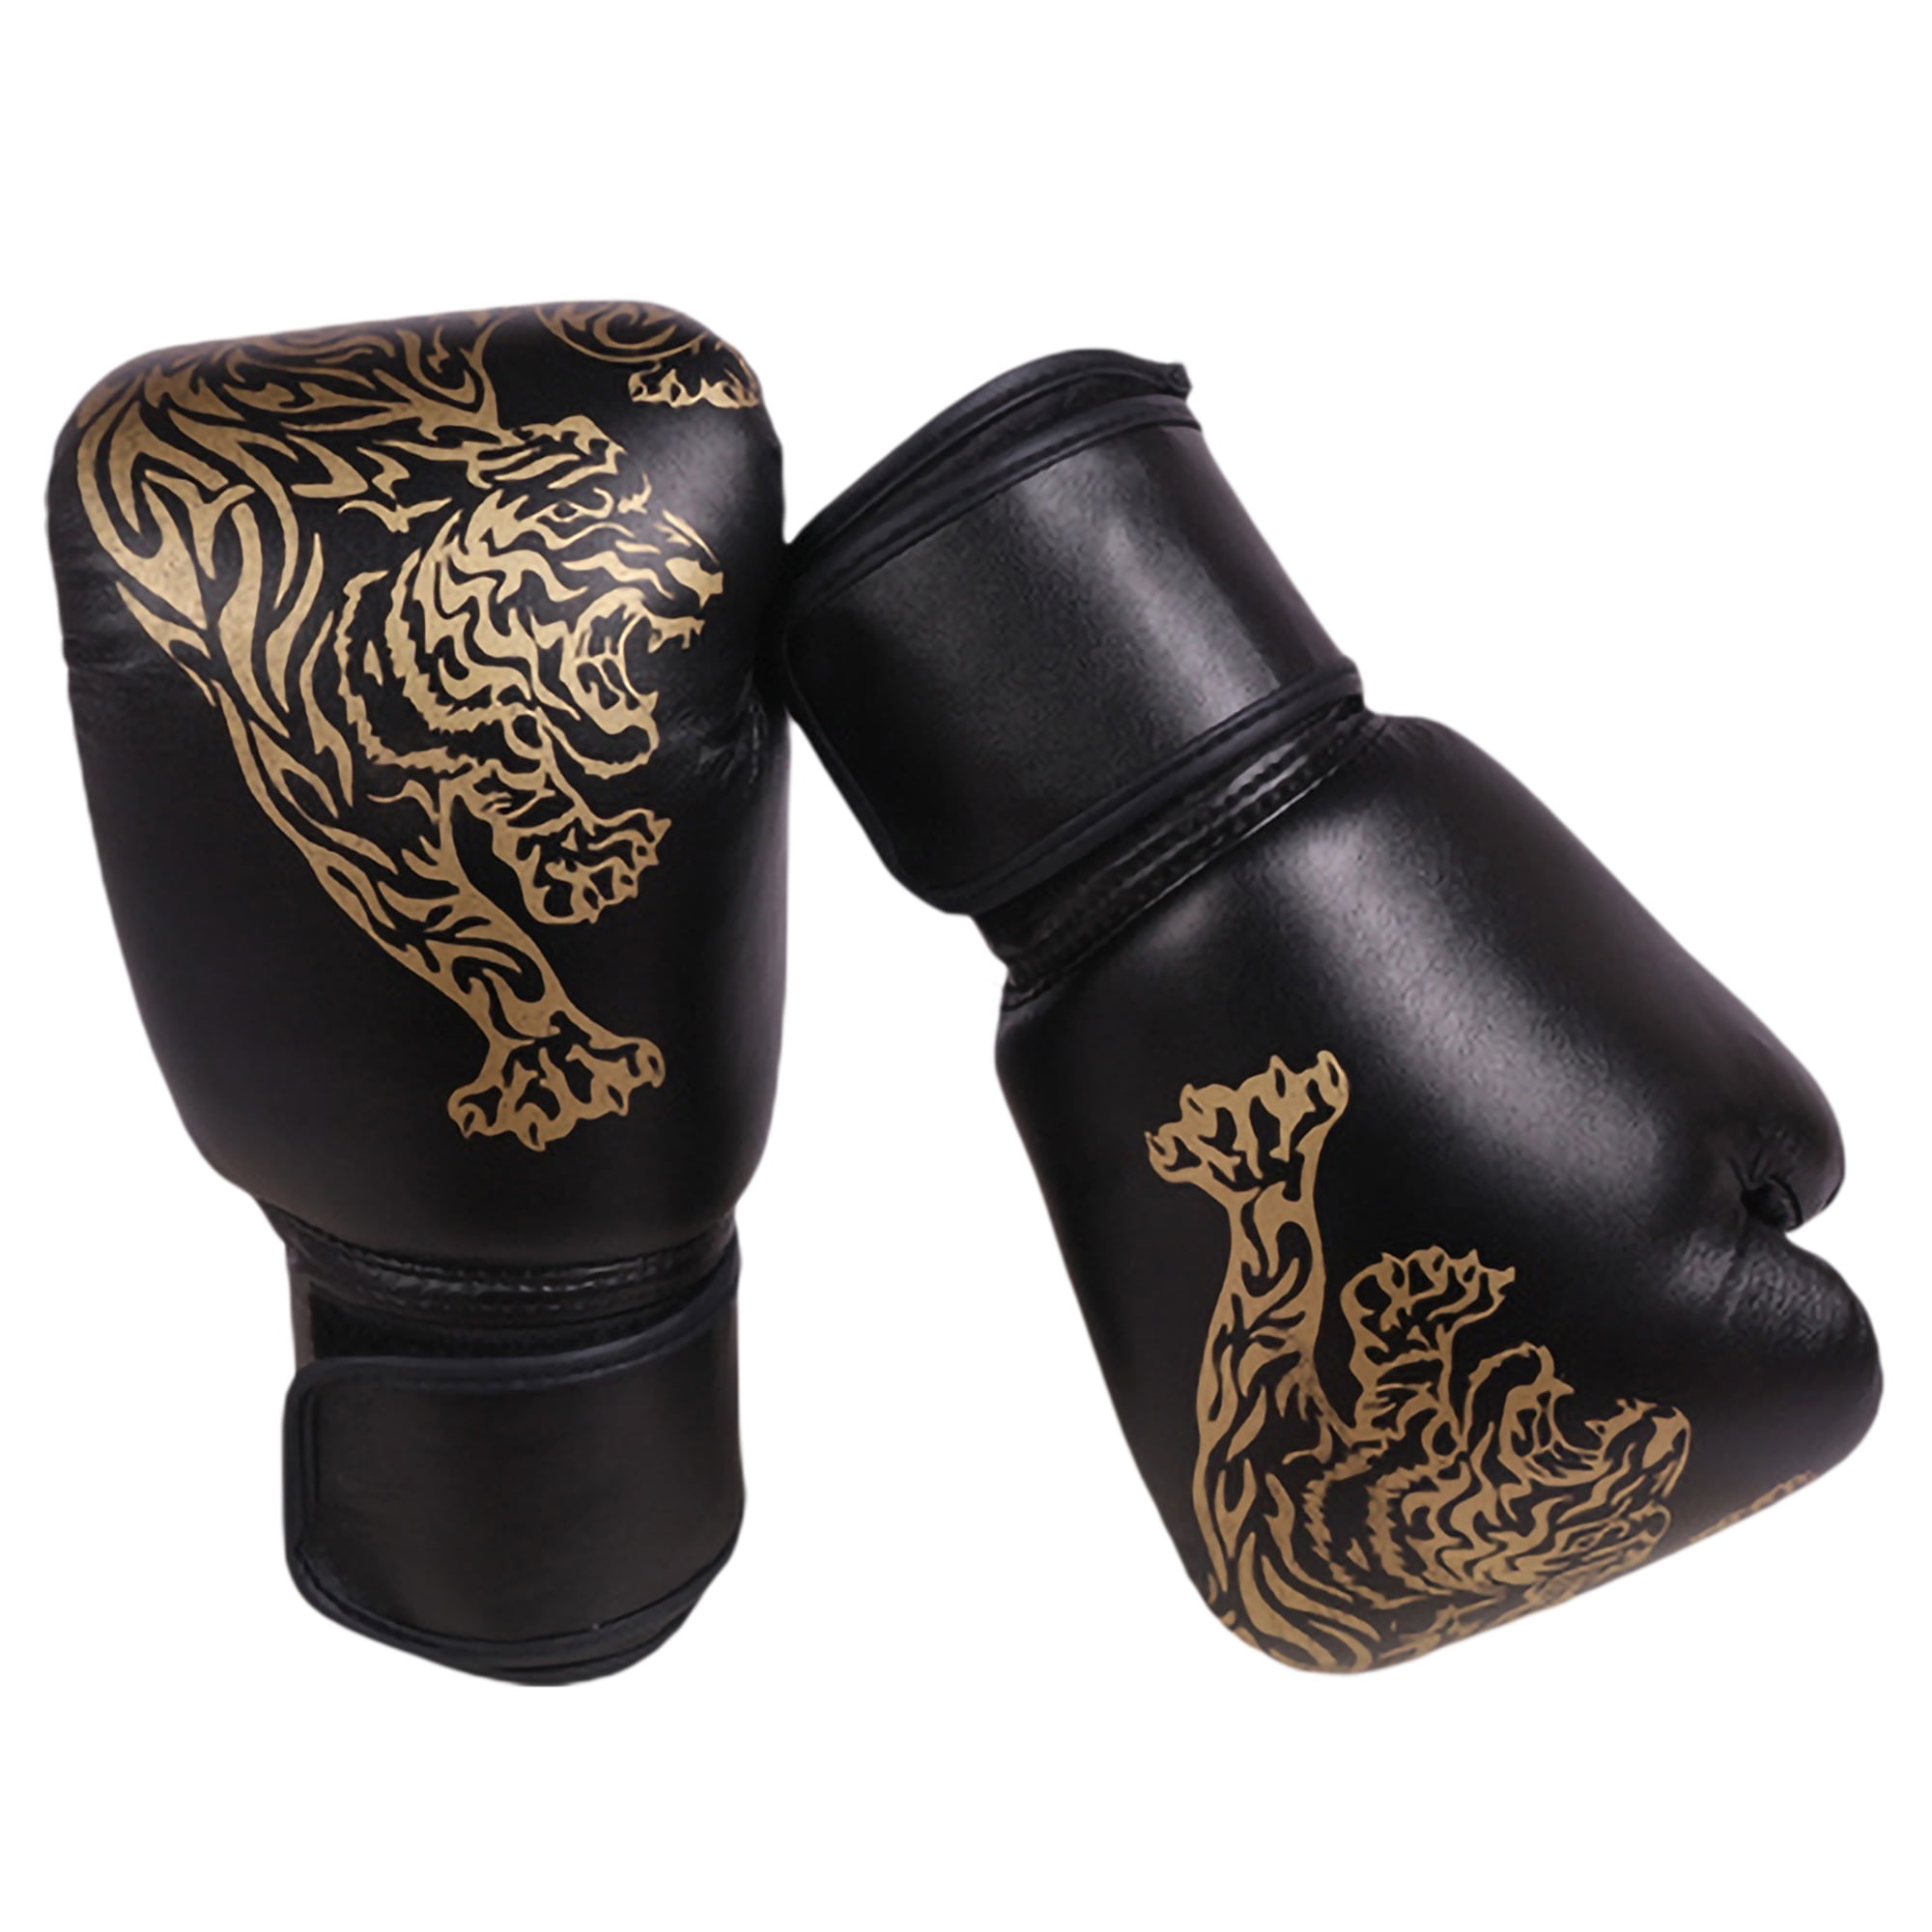 Focus Pads Sparring Punch bag Junior Gloves 4,6,8 OZ Kids Boxing Gloves 